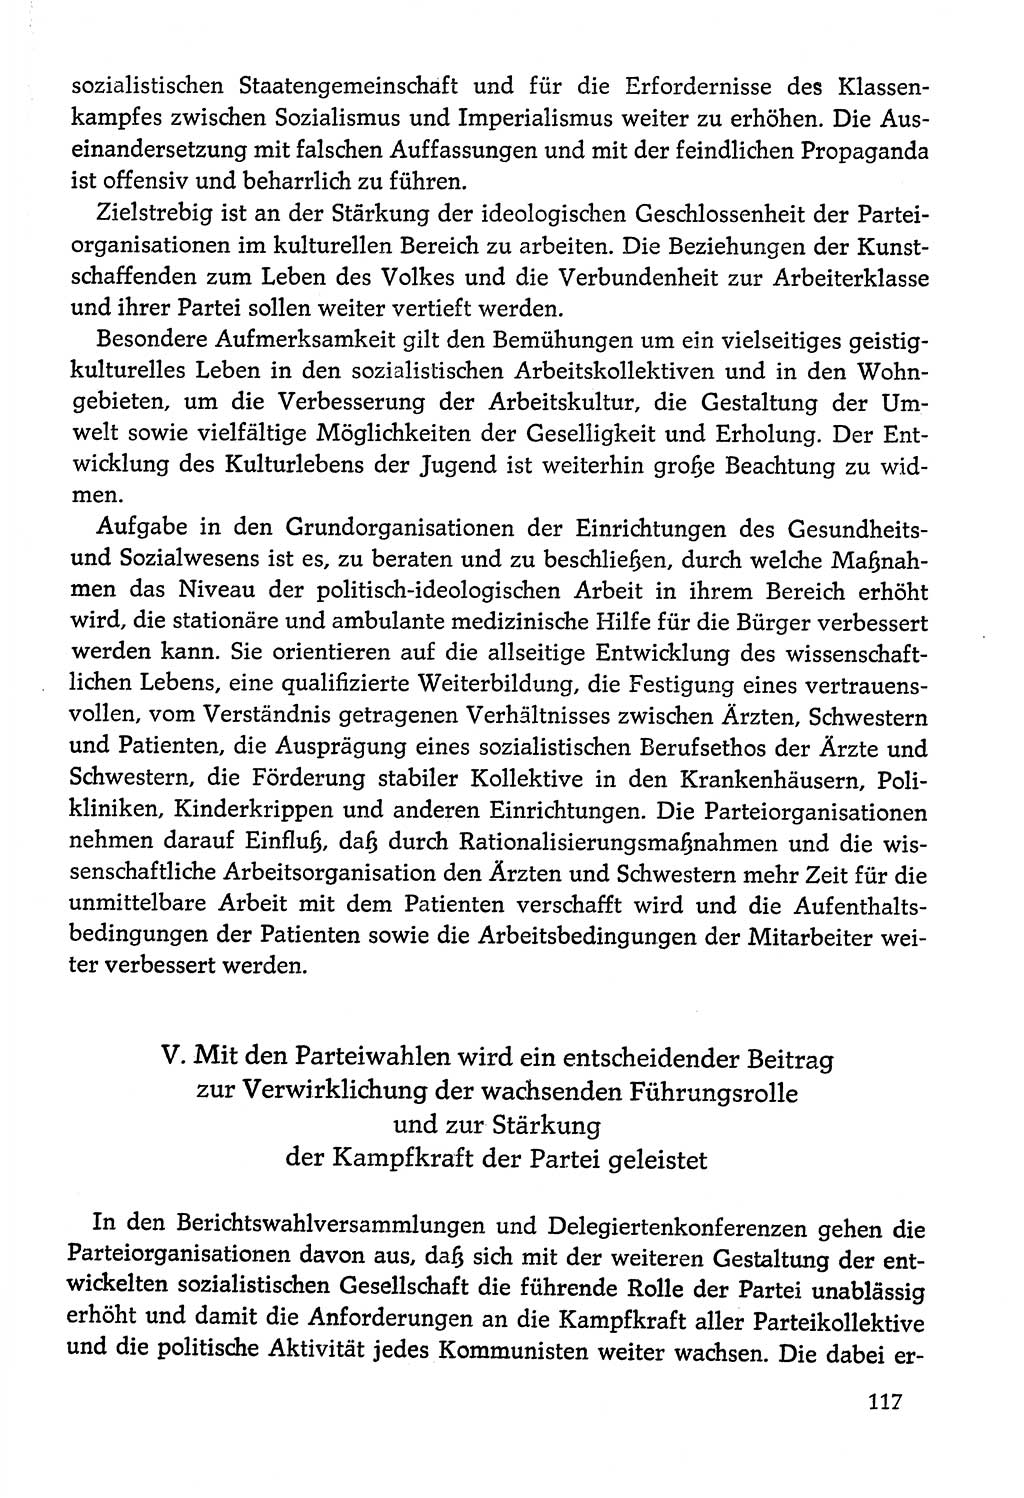 Dokumente der Sozialistischen Einheitspartei Deutschlands (SED) [Deutsche Demokratische Republik (DDR)] 1978-1979, Seite 117 (Dok. SED DDR 1978-1979, S. 117)